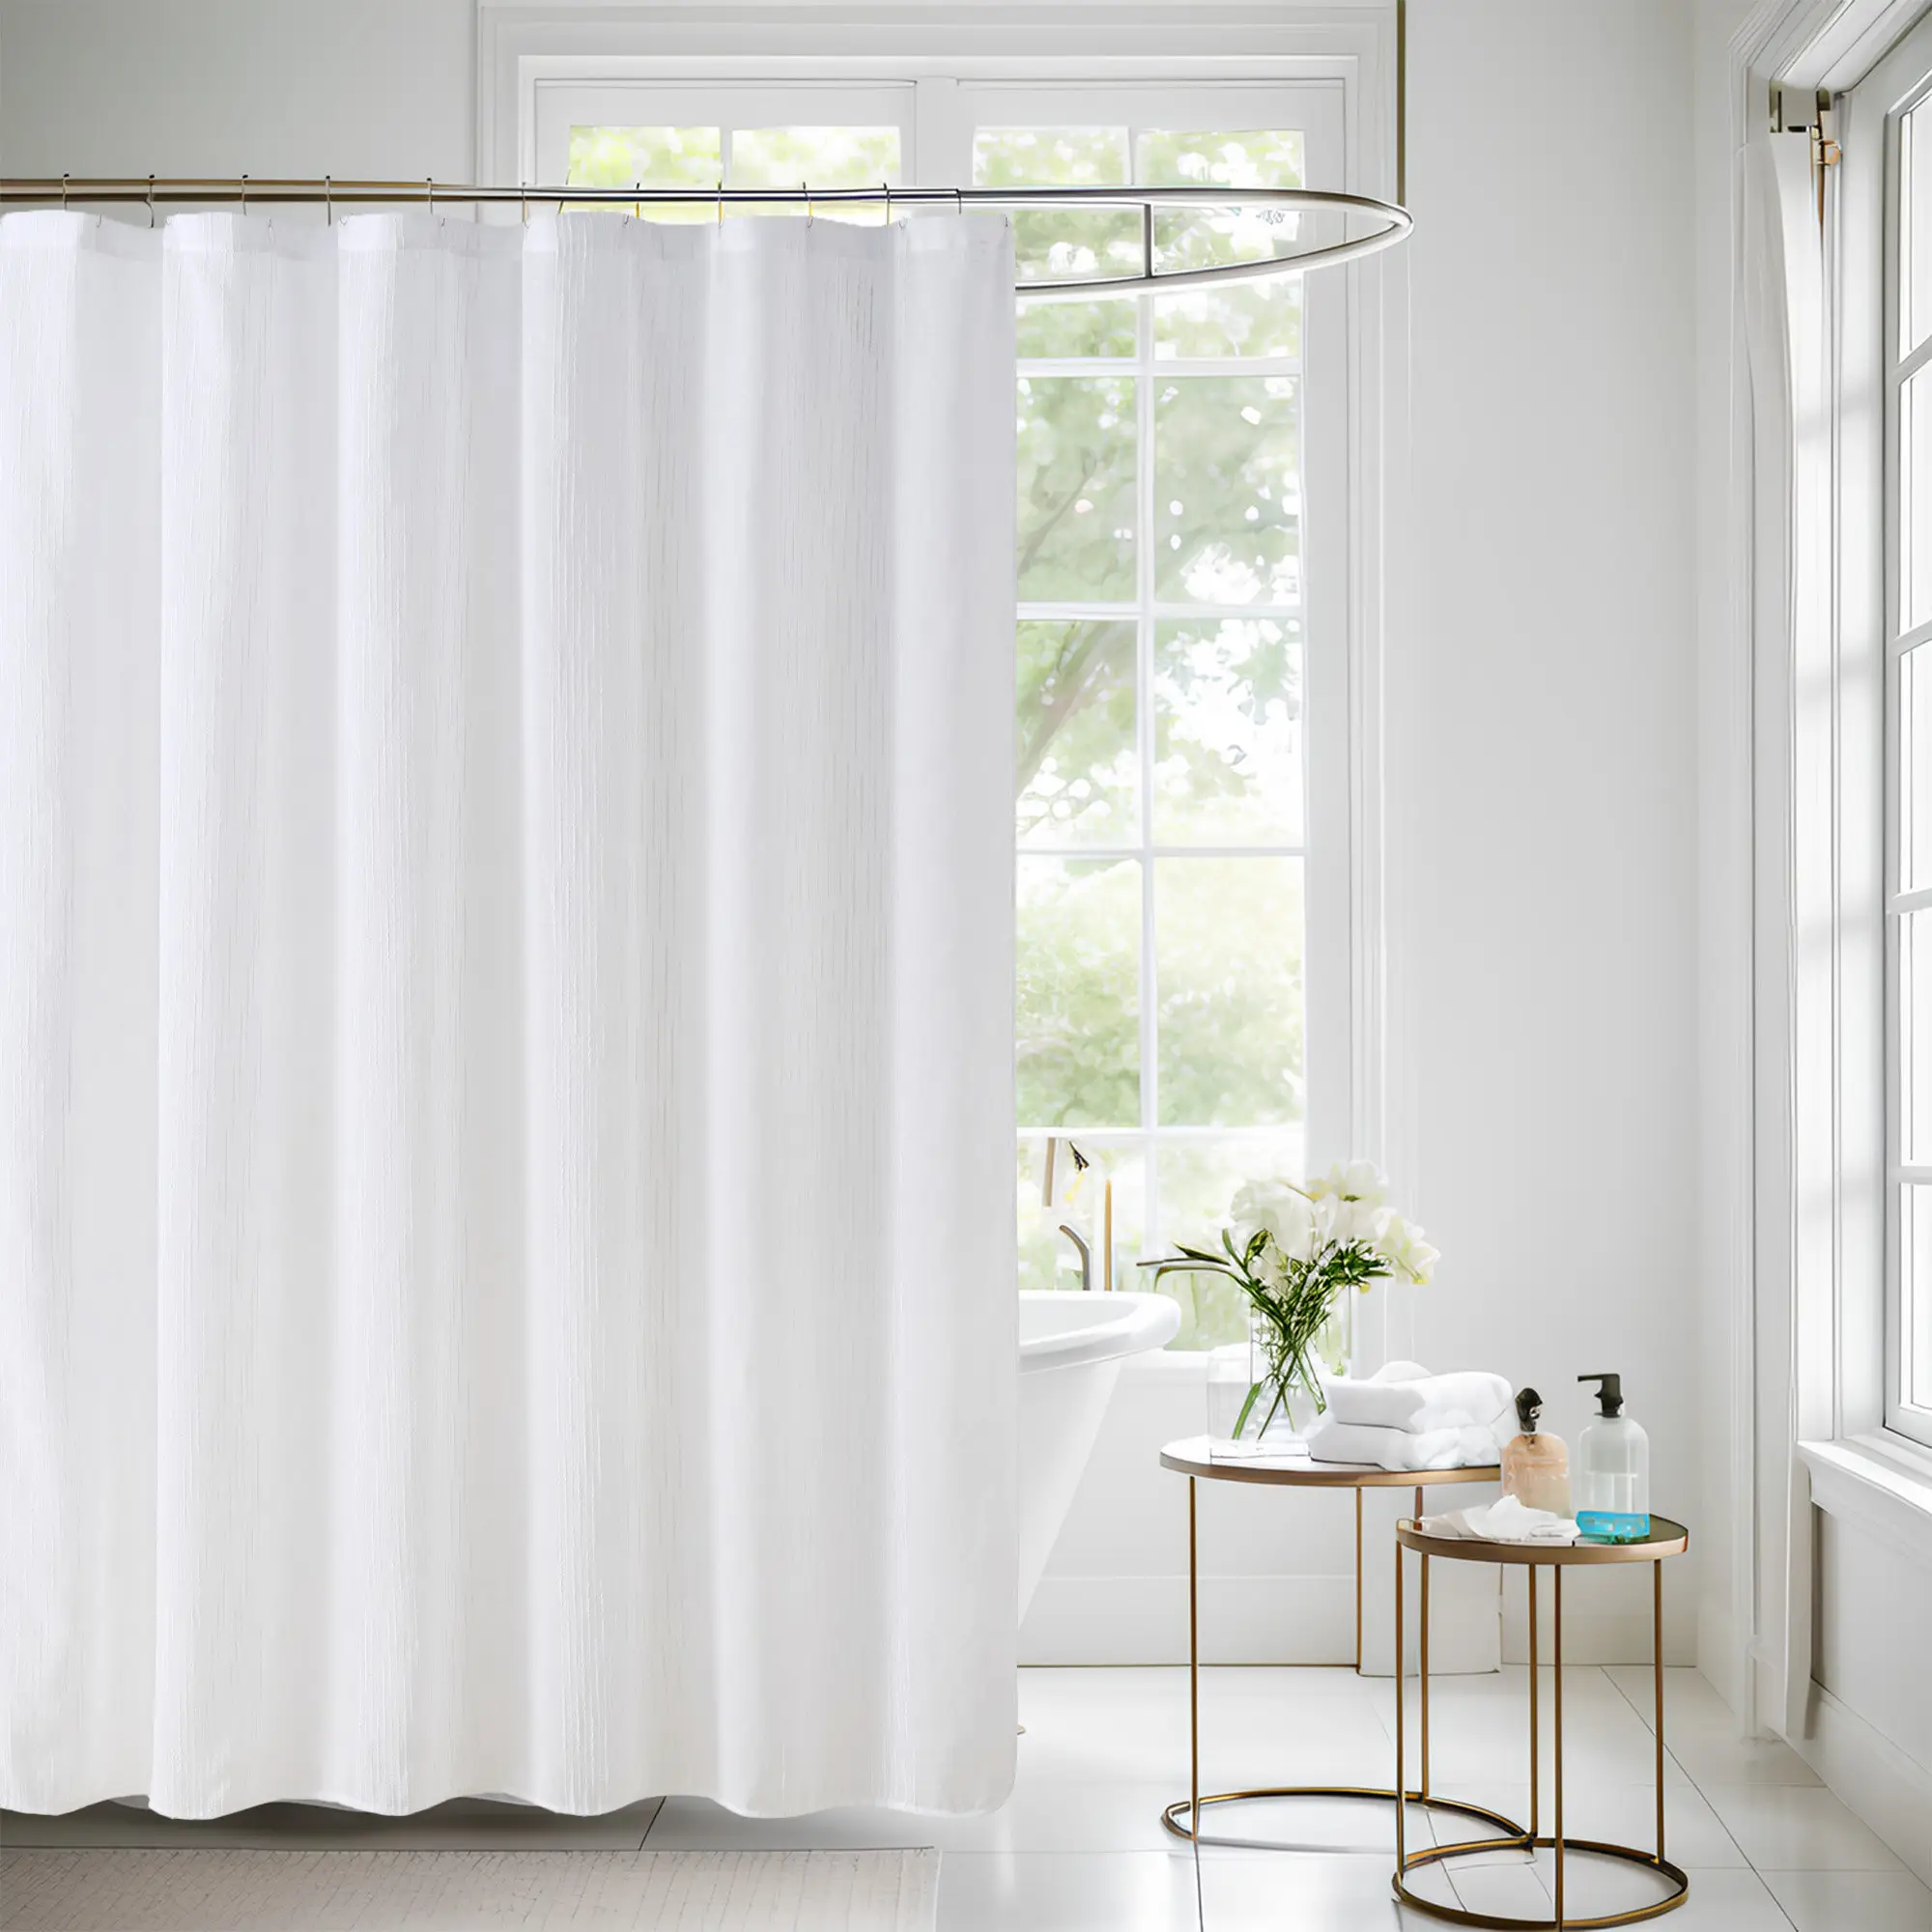 Vente chaude coton gris et blanc imperméable 72x72 pouces solide Long rideau de douche pour salle de bain élégante maximaliste